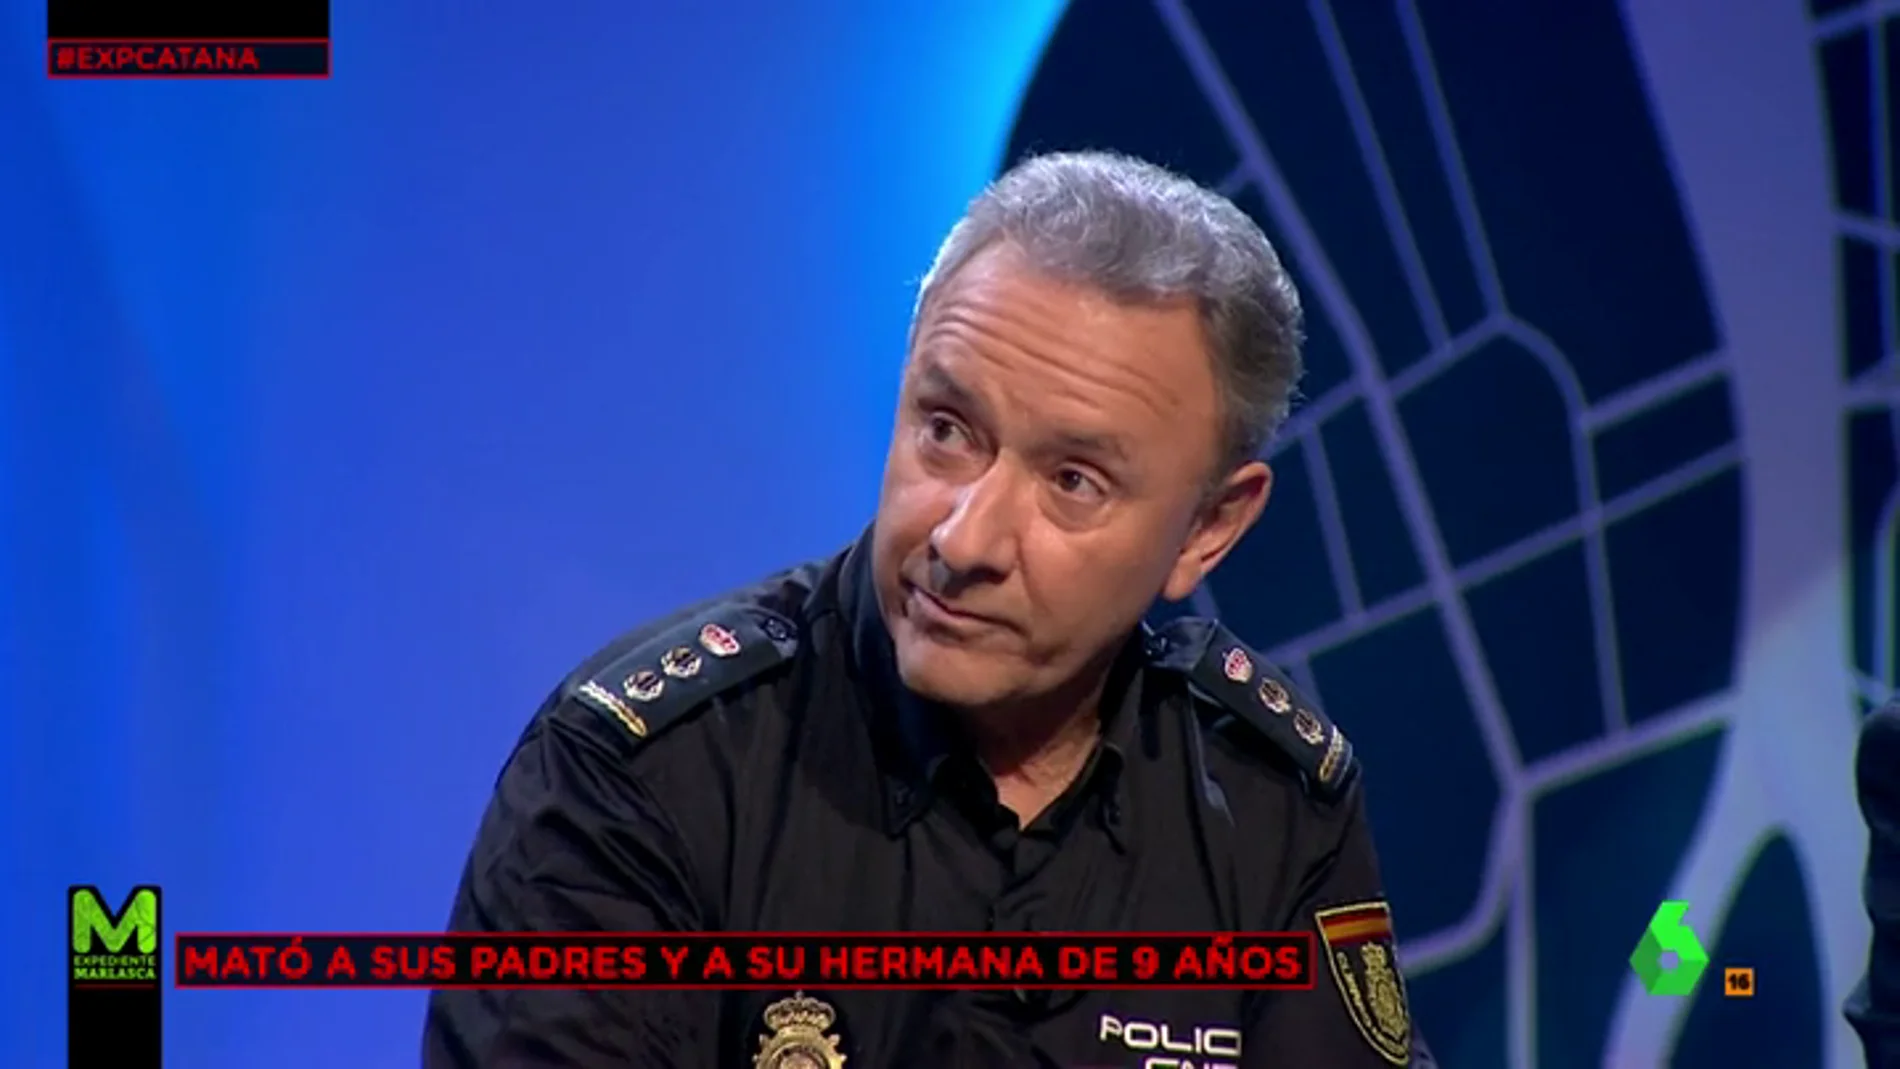 Alfonso Navarro, el comisario que interrogó al asesino de la catana